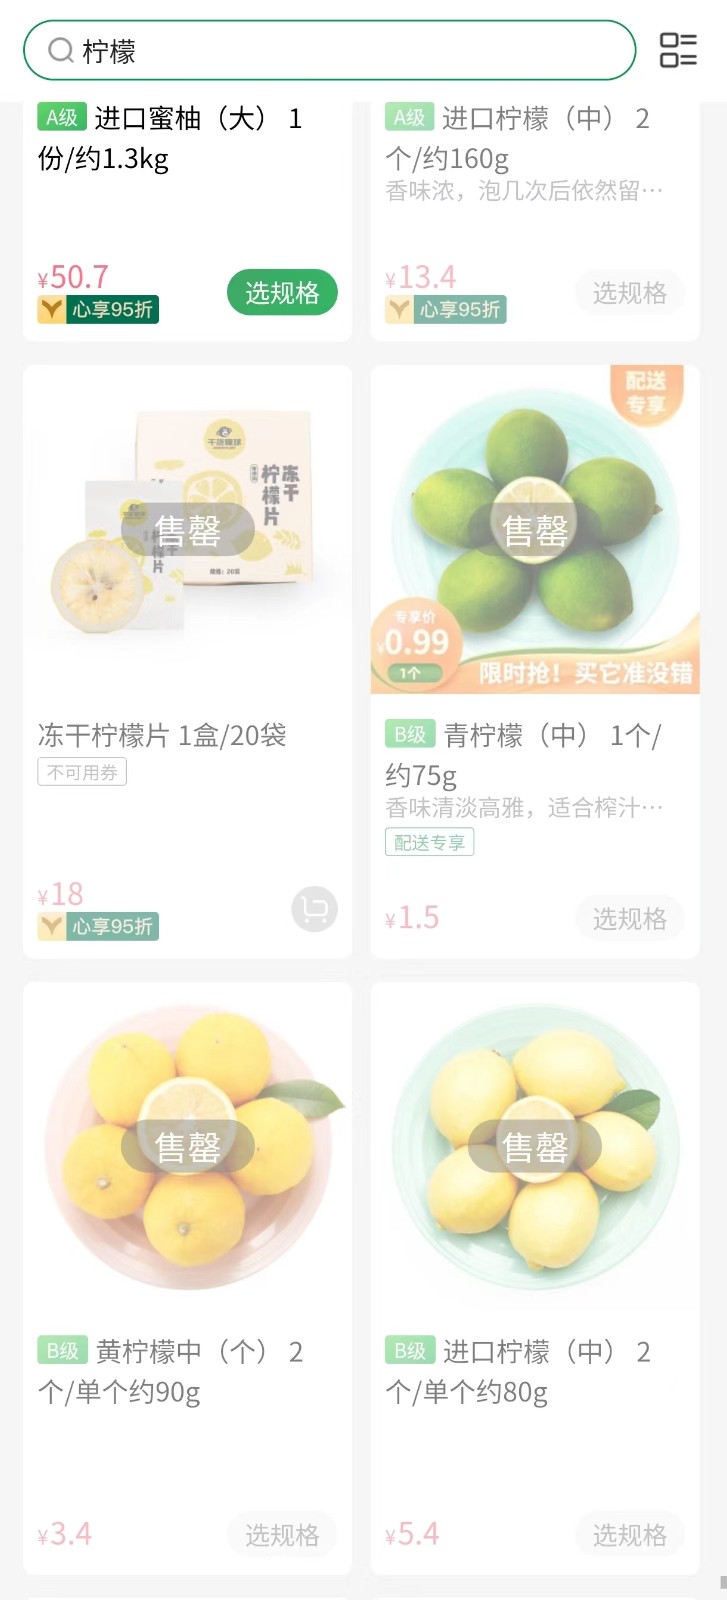 柠檬也遭抢购！可卖到6令吉一颗 中国电商平台：两三天可恢复正常供应